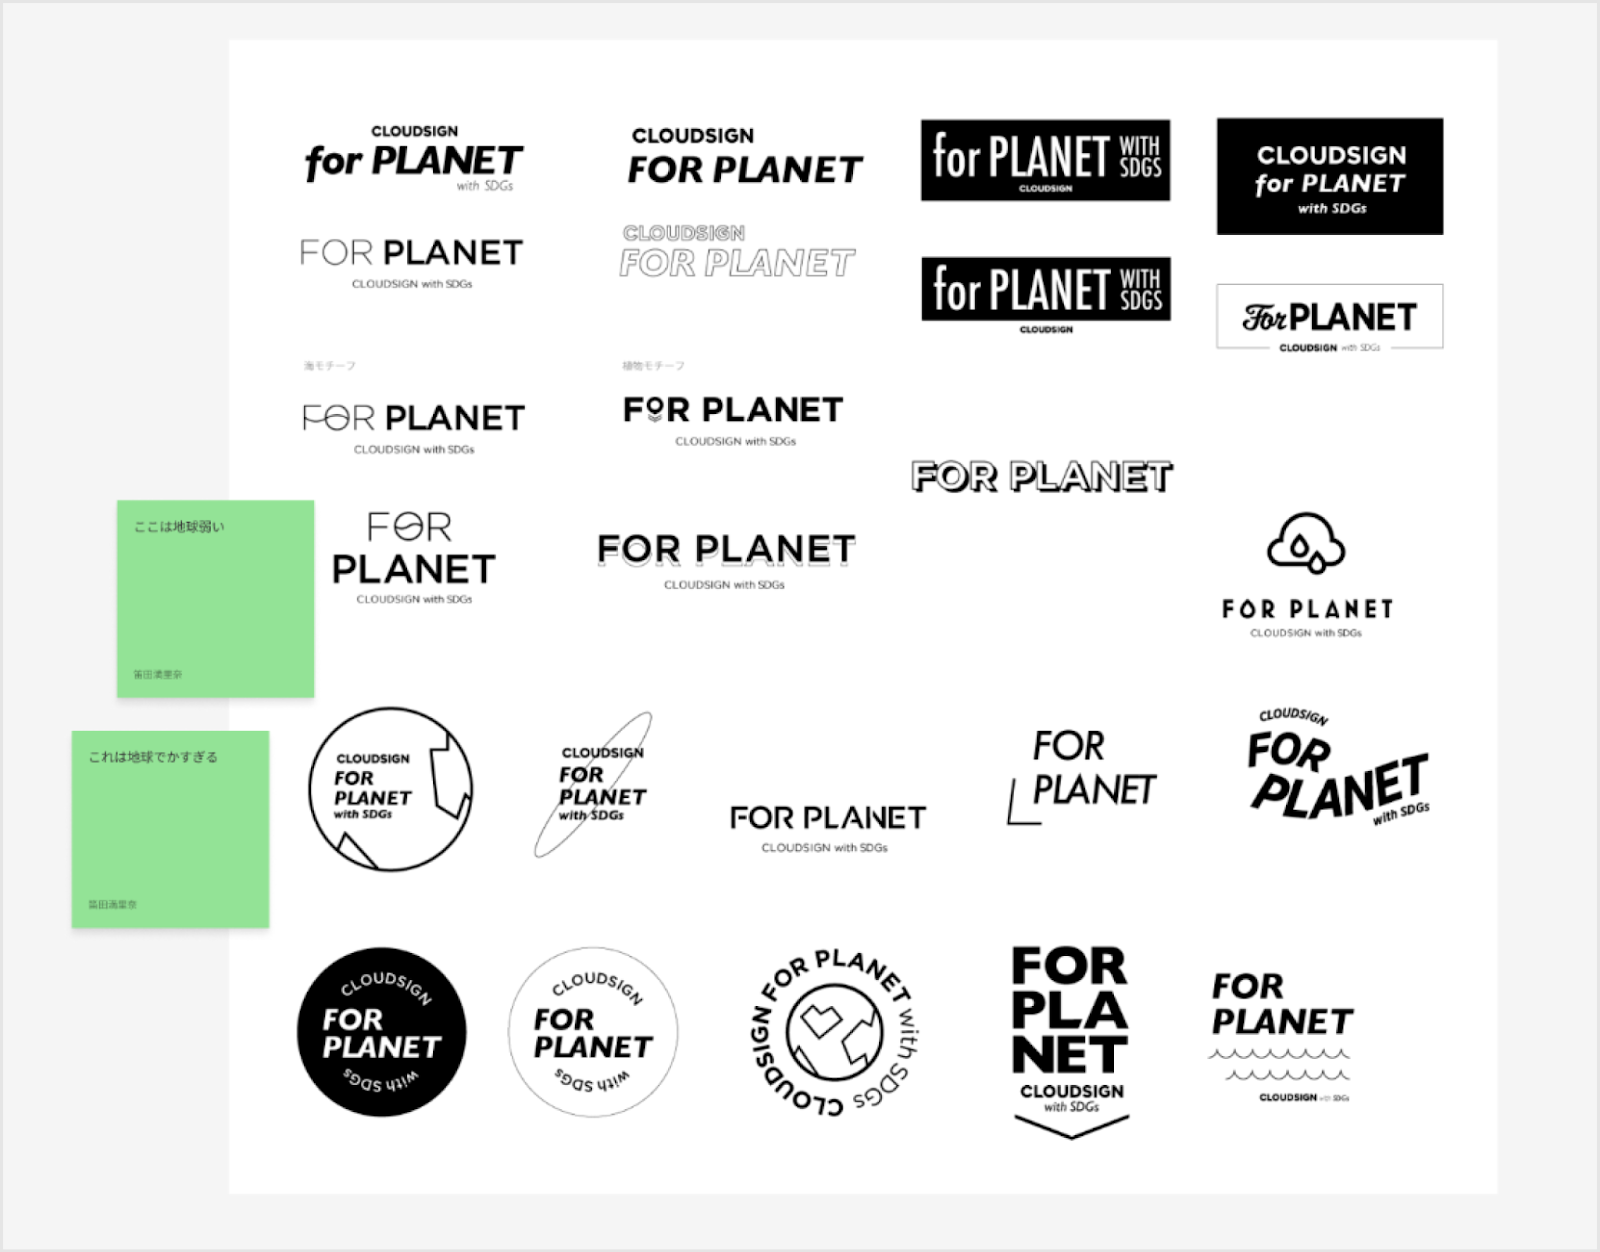 CloudSign for Planetのロゴのアイデア発散の様子。一面にロゴのアイデアが展開され横の付箋に「ここは地球が弱い」「これは地球がでかすぎる」と記載されている。